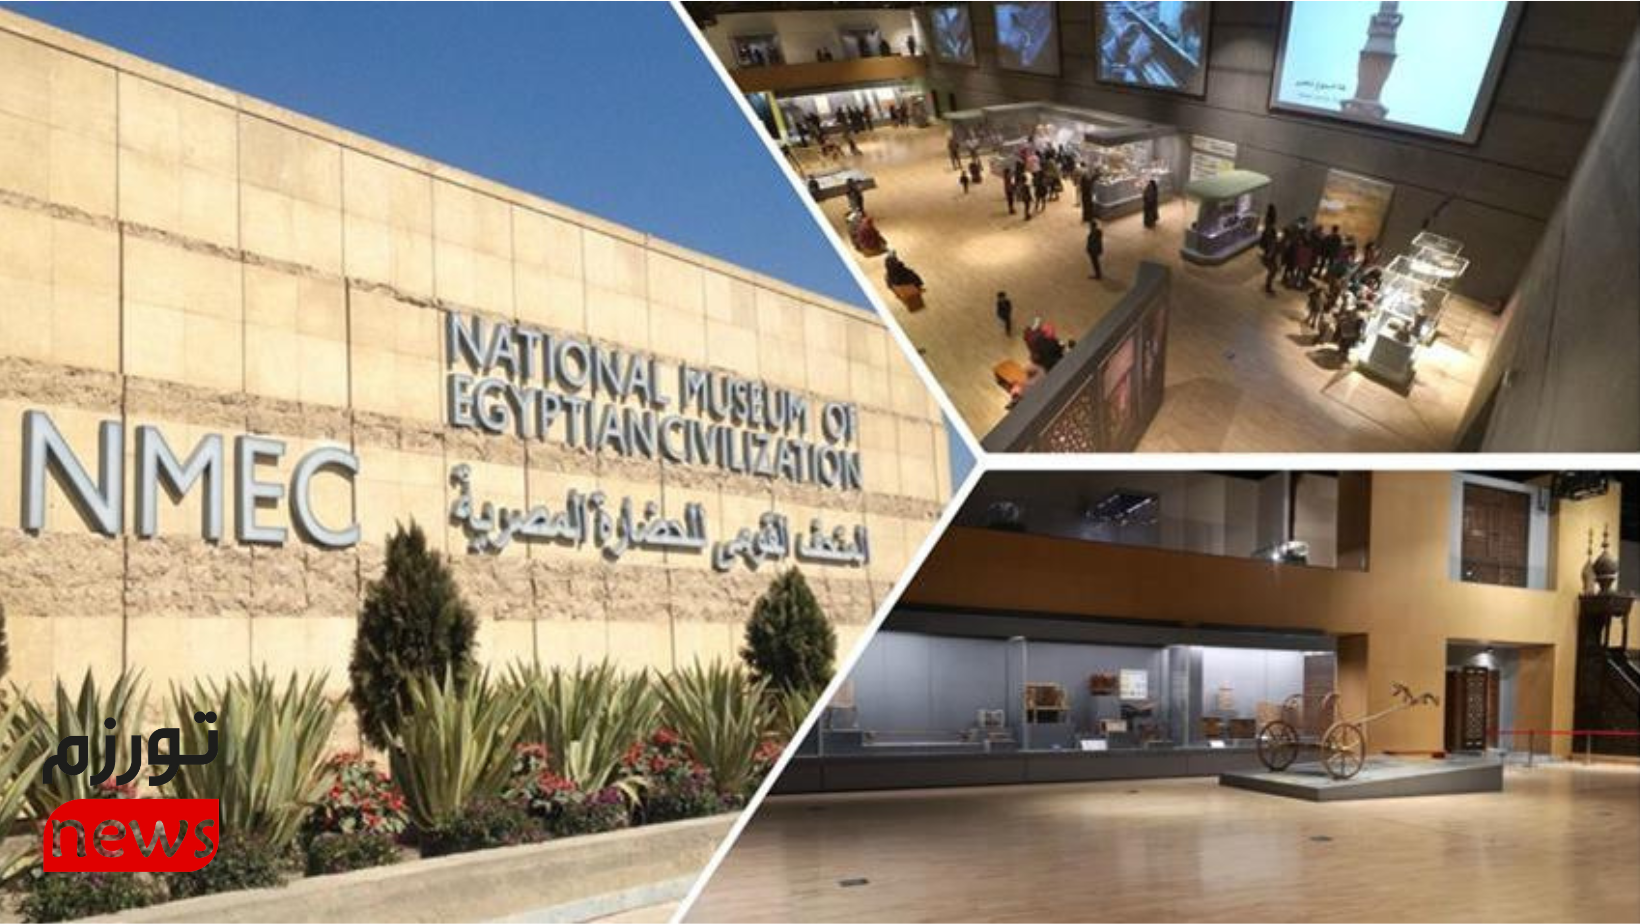 Le Musée national de la civilisation